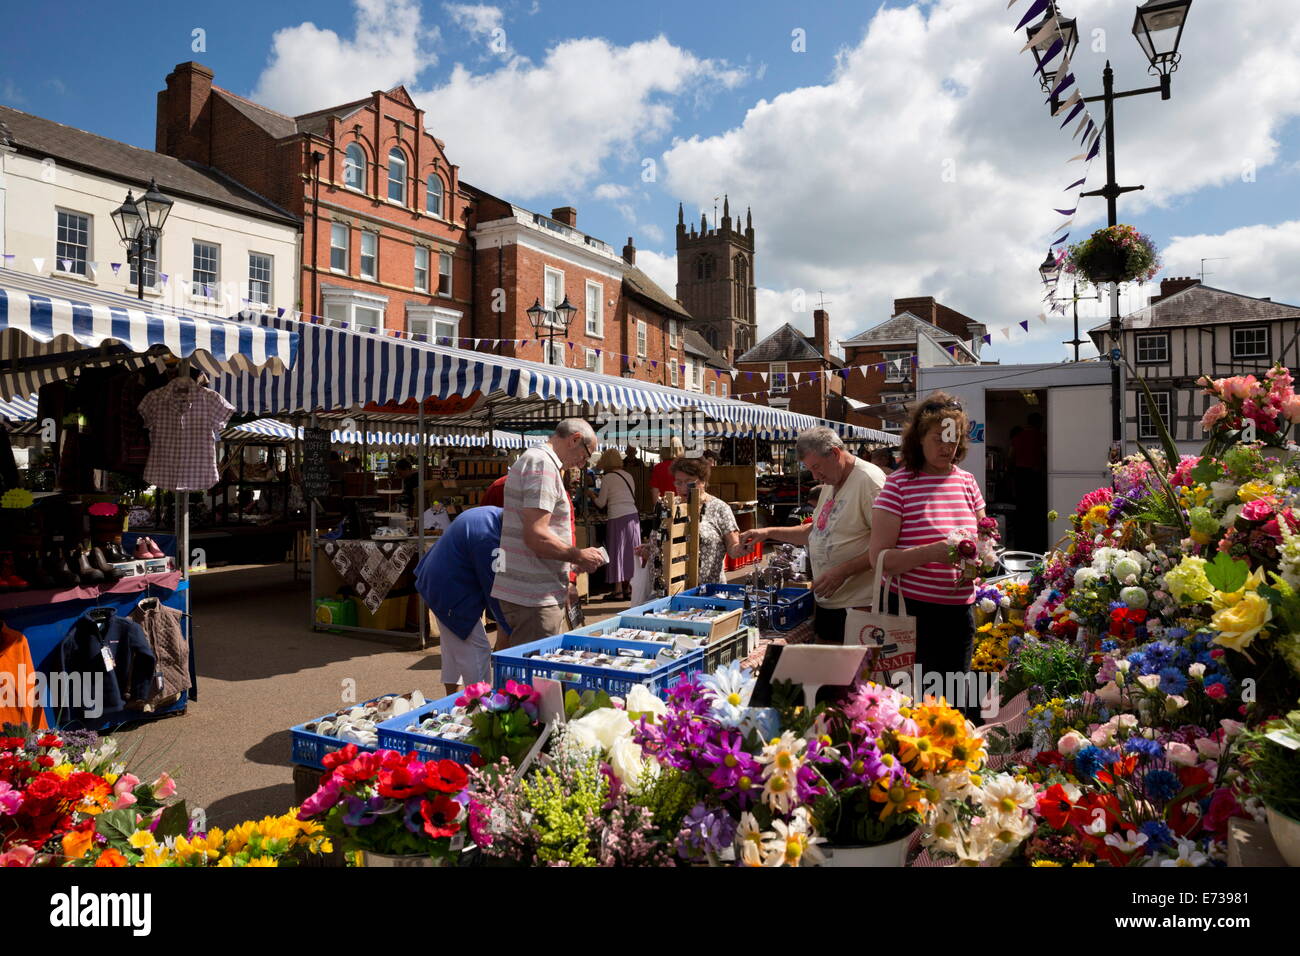 Ludlow market, Castle Square, Ludlow, Shropshire, England, United Kingdom, Europe Stock Photo